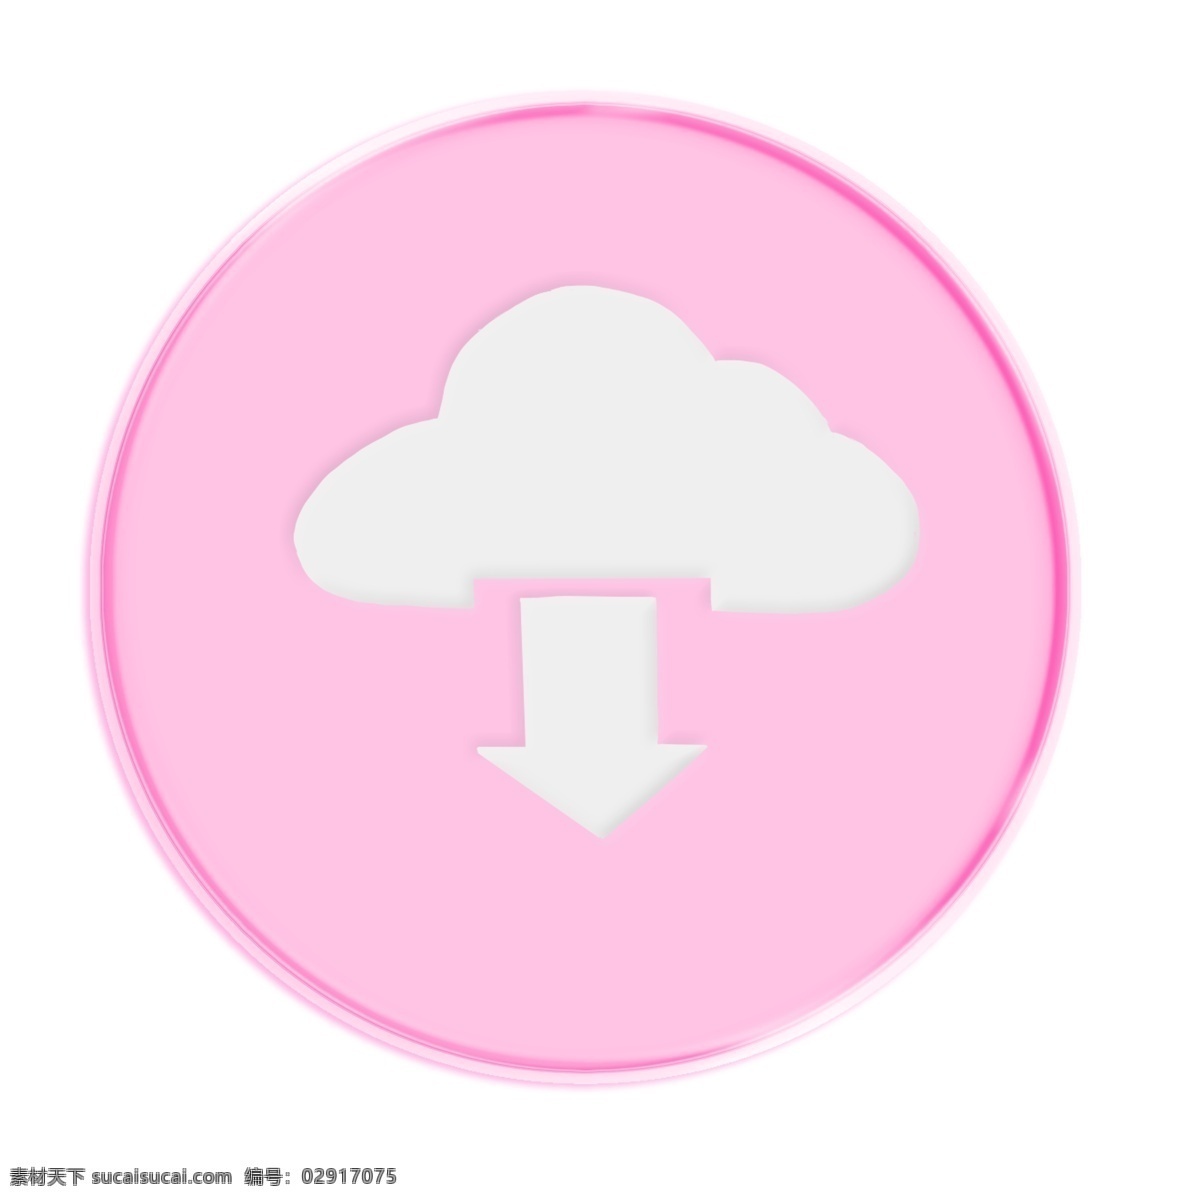 粉色 向下 按钮 插画 白色的云朵 漂亮 手绘向下按钮 圆形向下按钮 卡通向下按钮